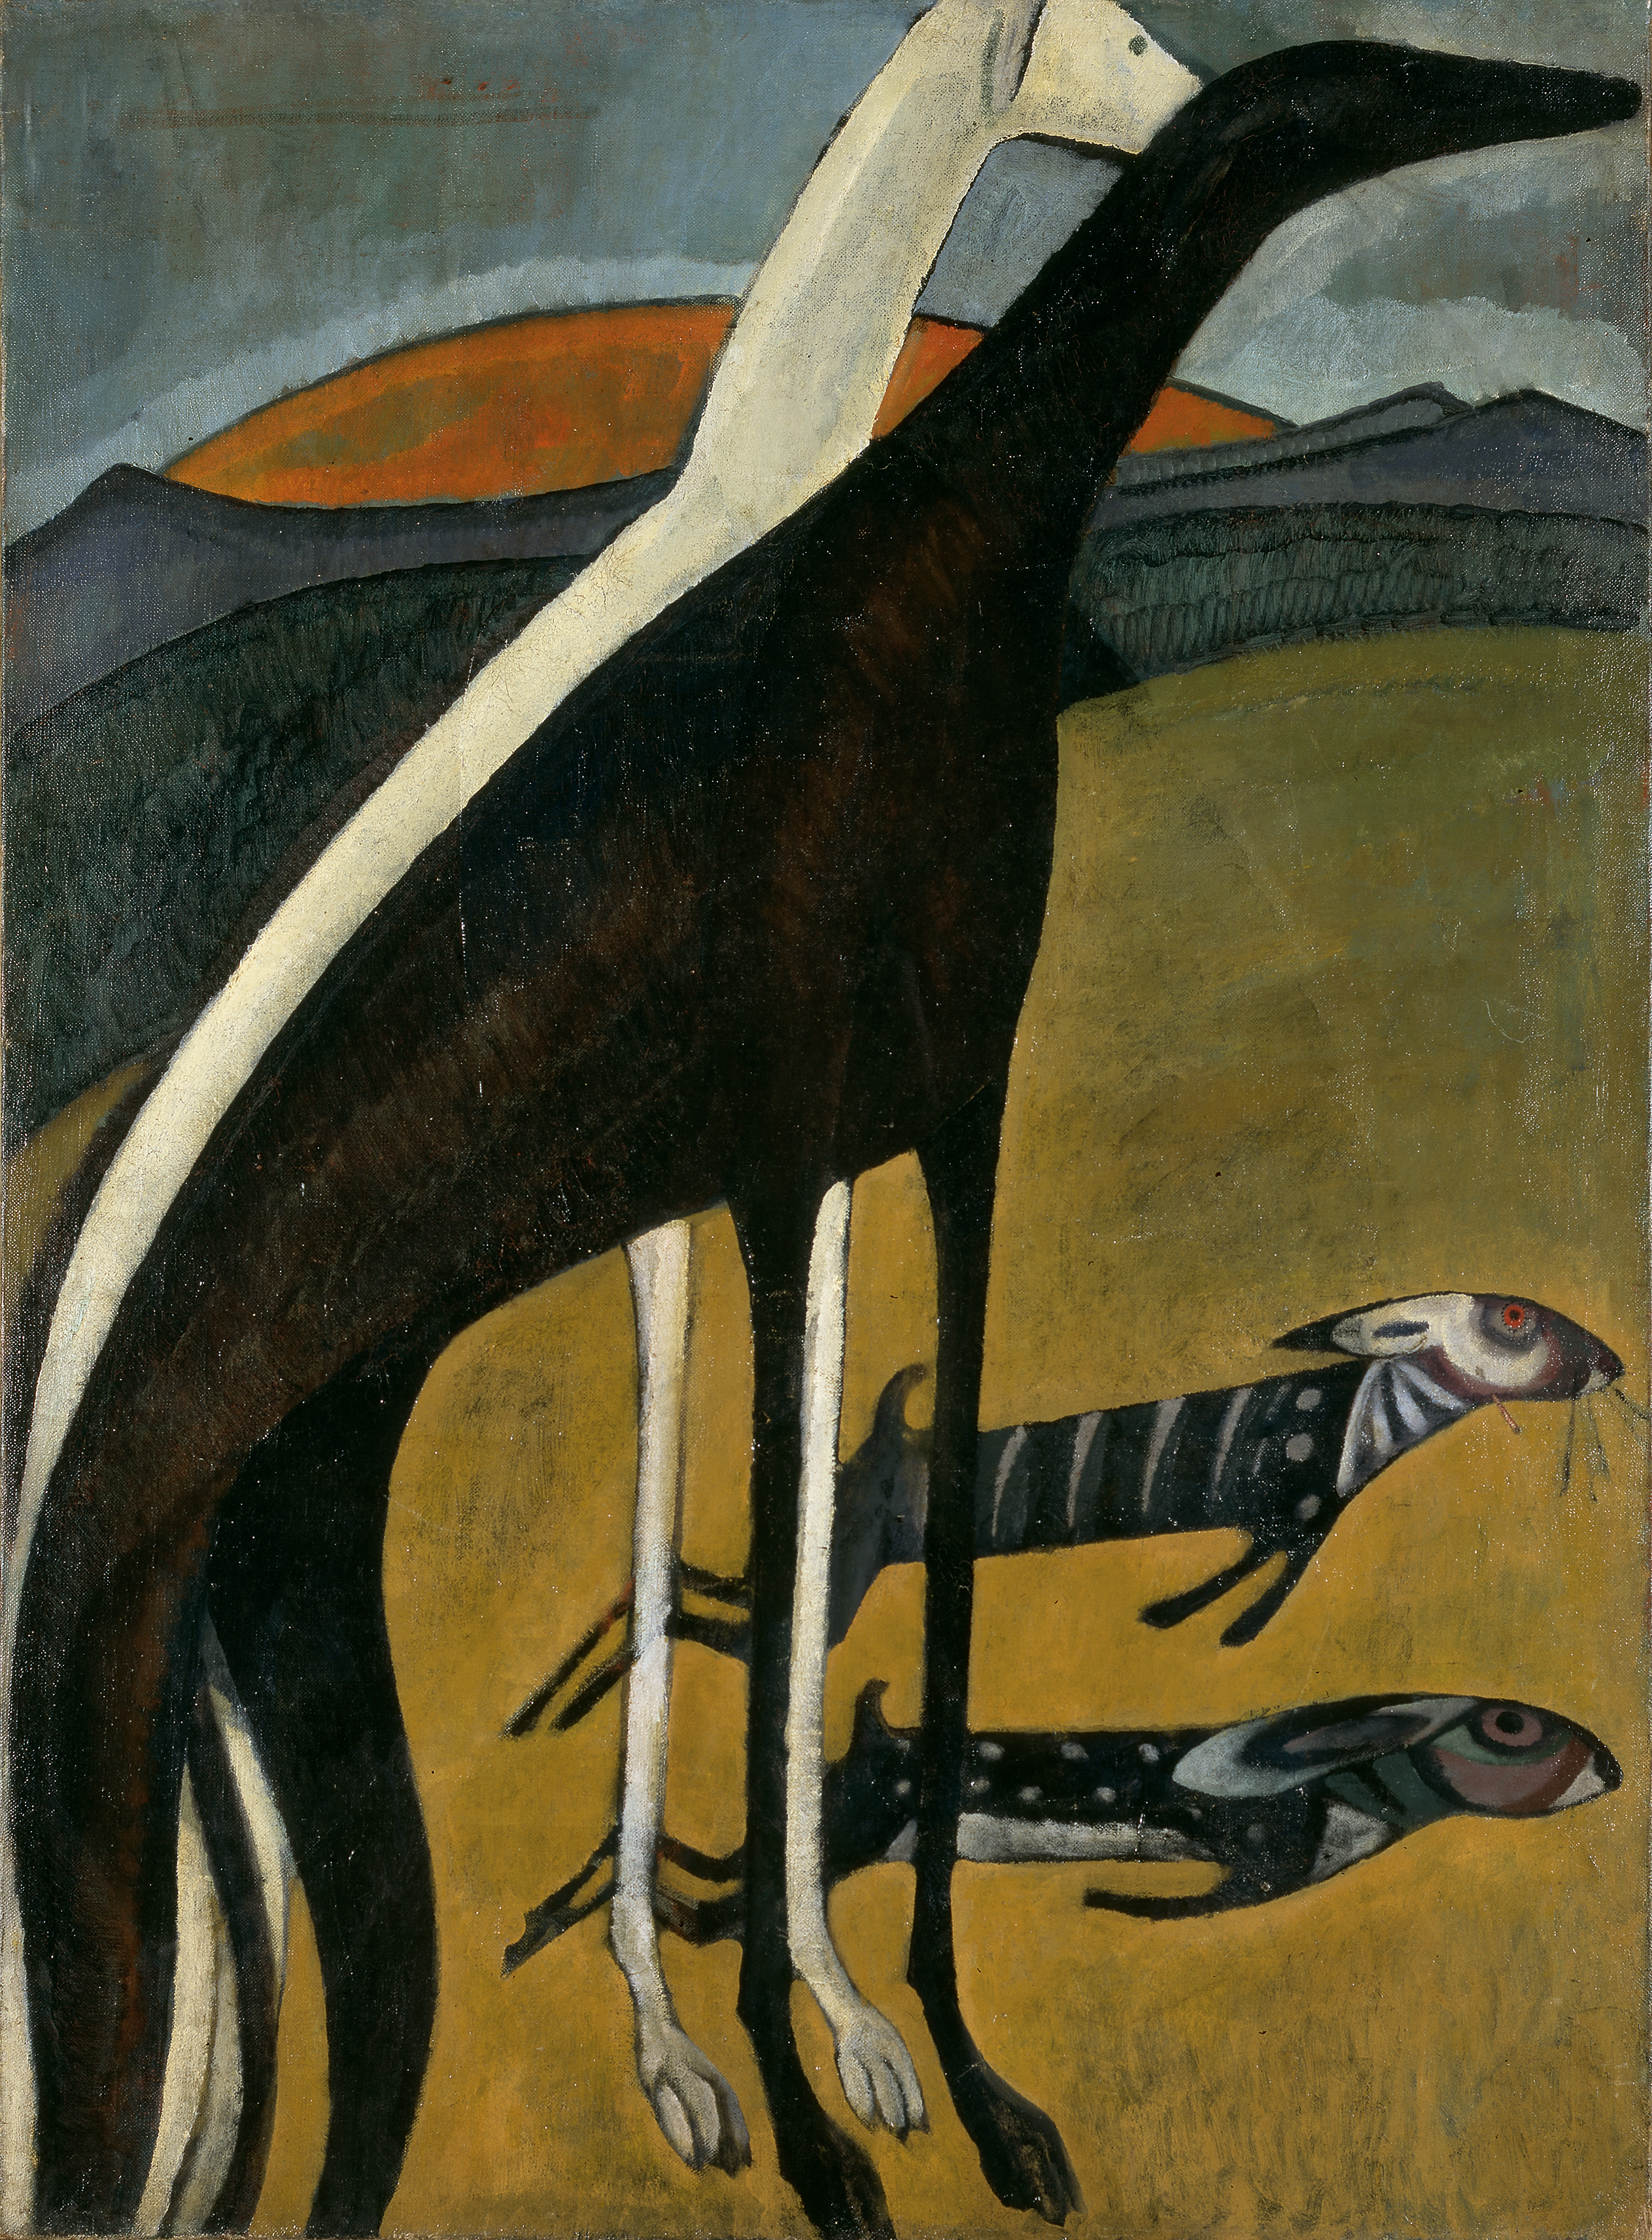 Chrti by Amadeo de Souza Cardoso - 1911 - 100 cm x 73 cm 